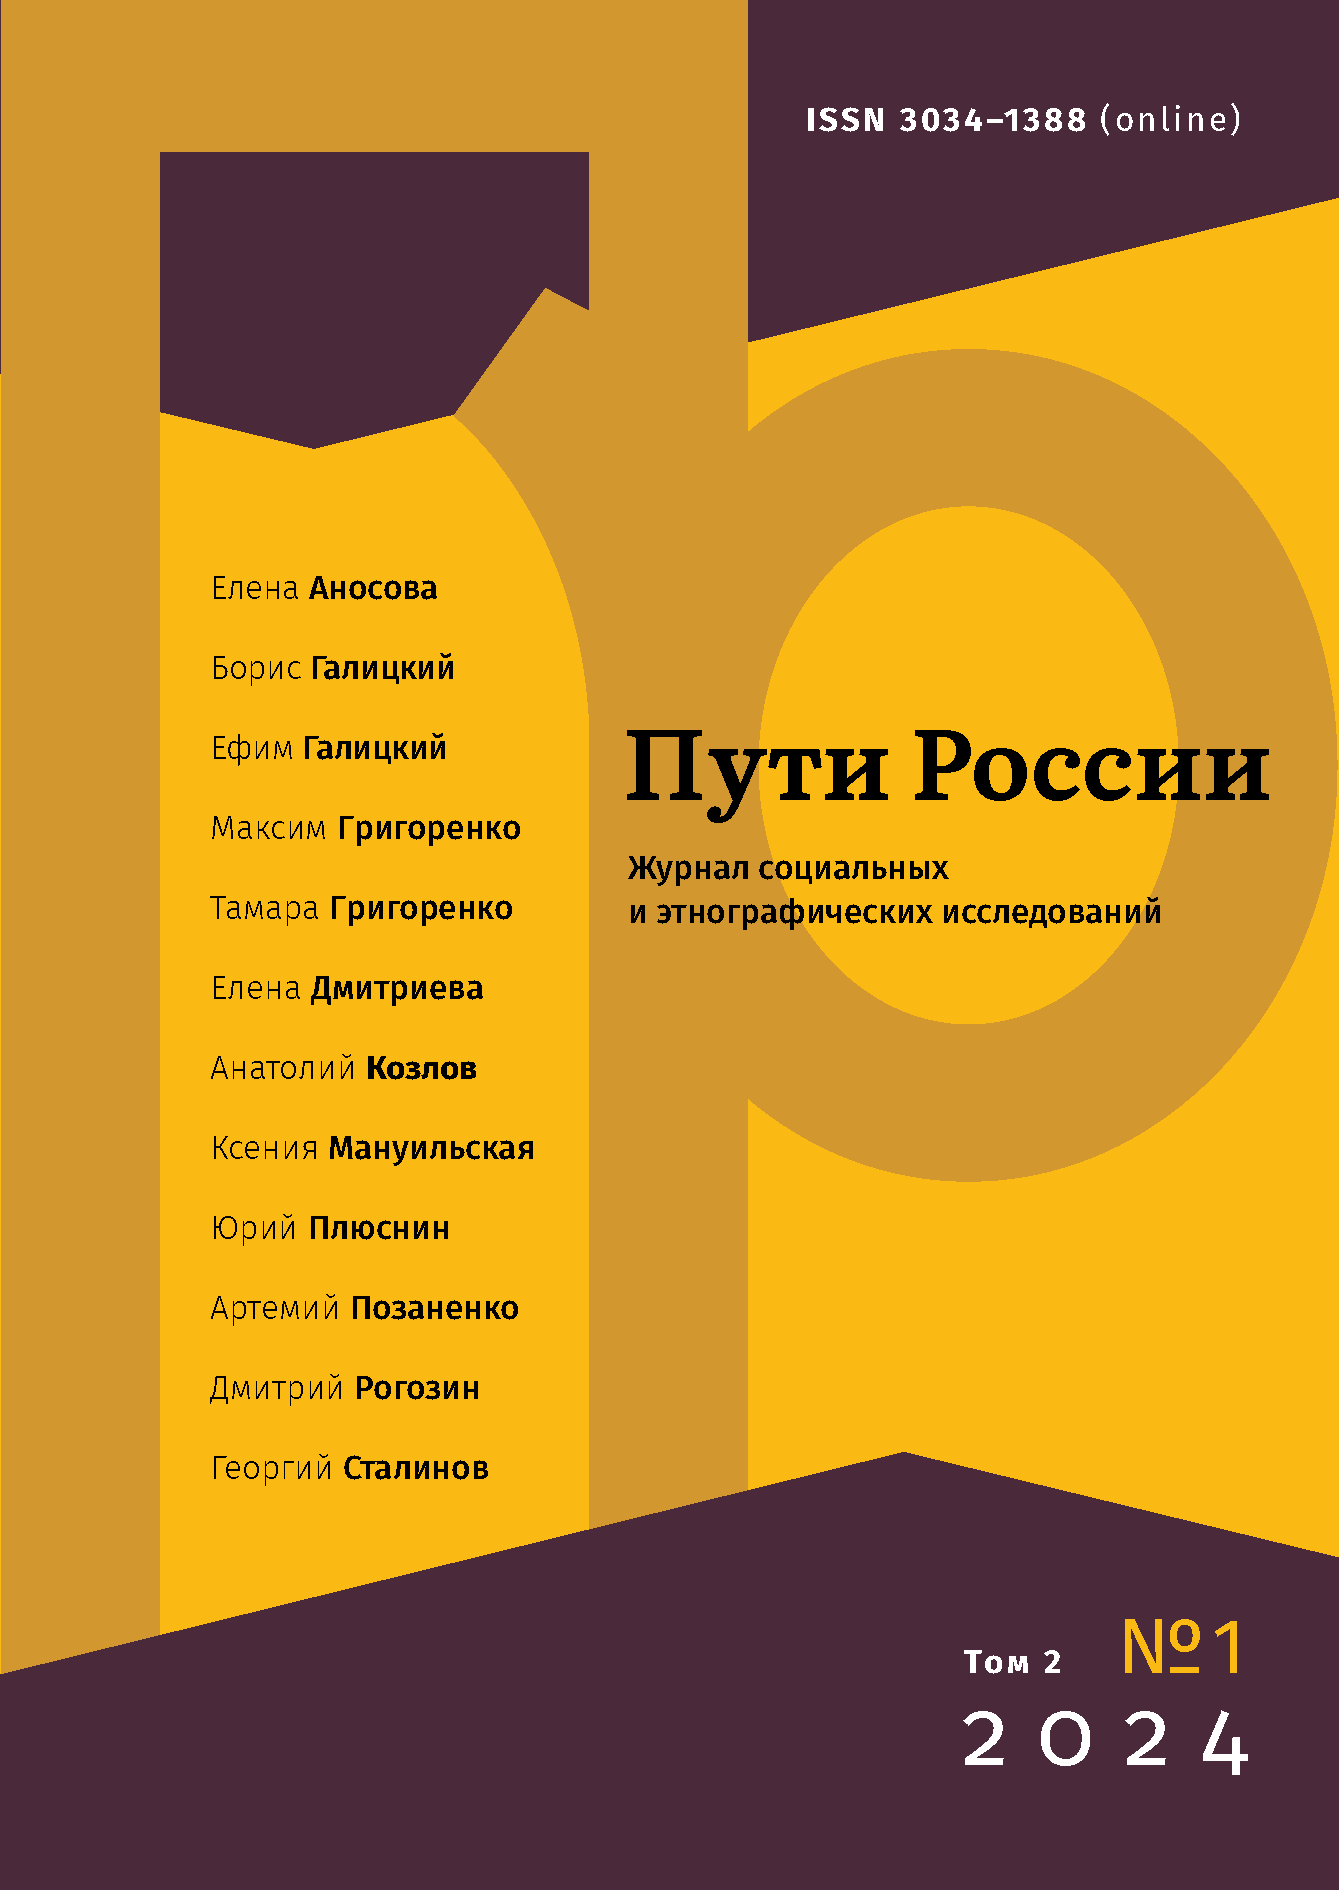 					Показать Том 2 № 1 (2024): Пути России. Журнал cоциальных и этнографических исследований
				